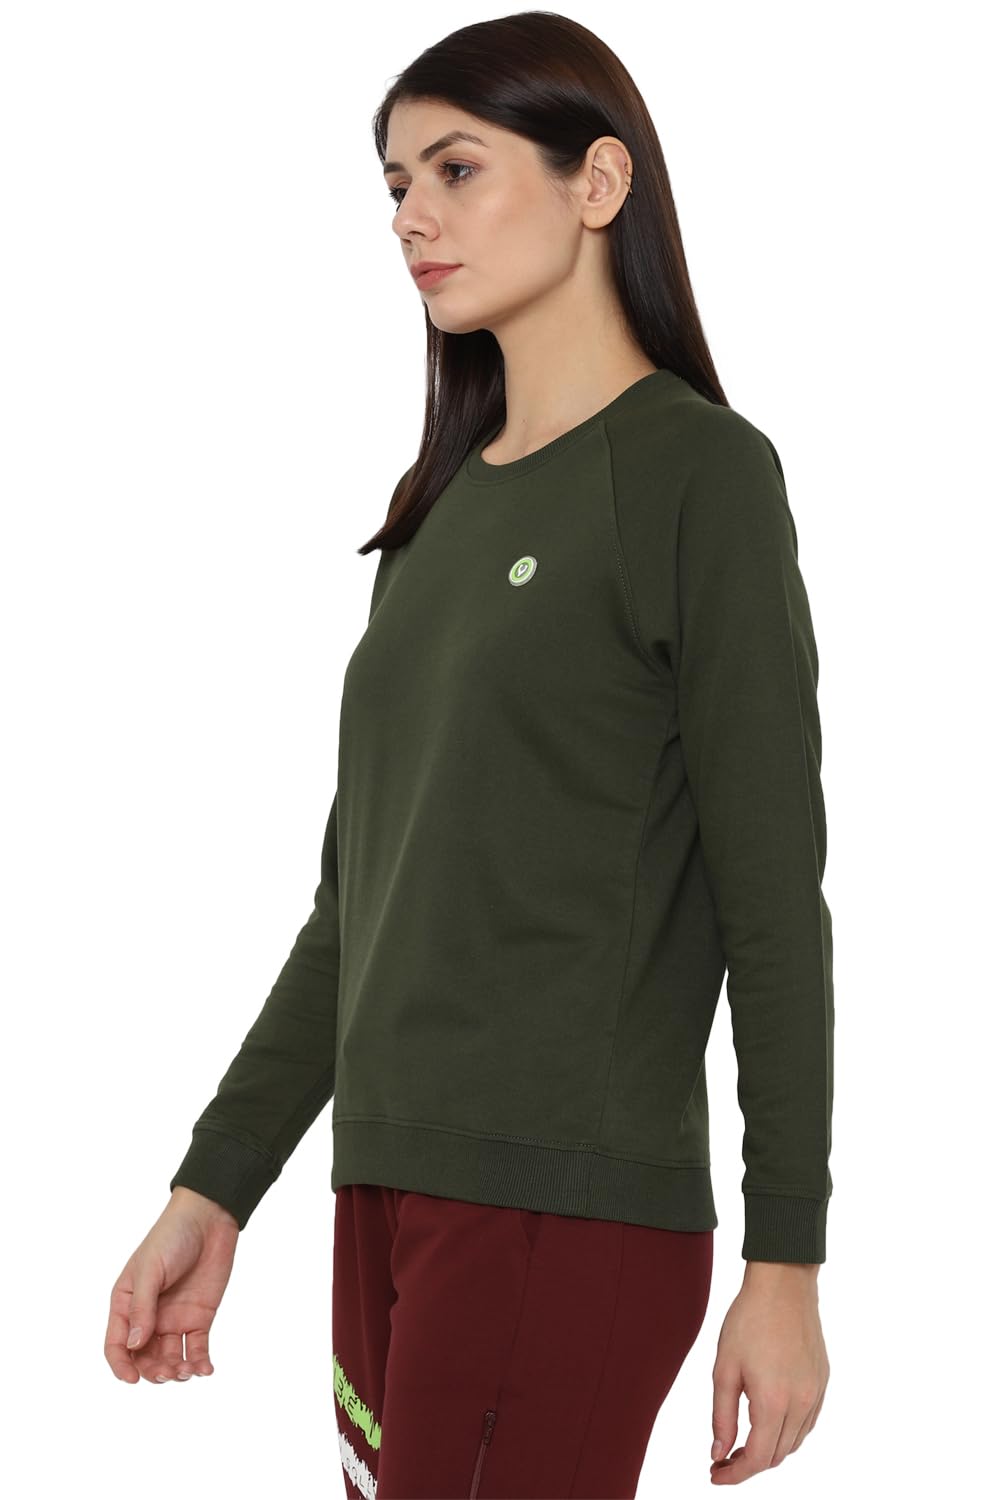 Allen Solly Women's Sweatshirts Green 